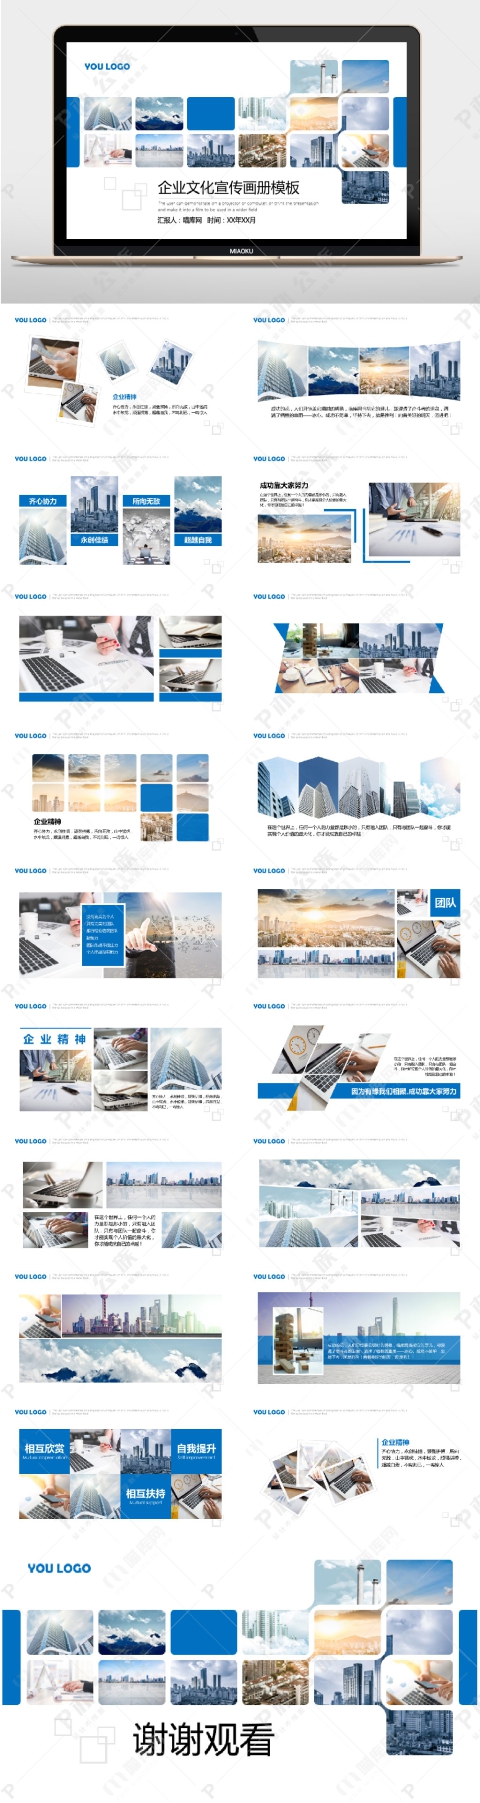 蓝色商务企业文化宣传画册PPT模板